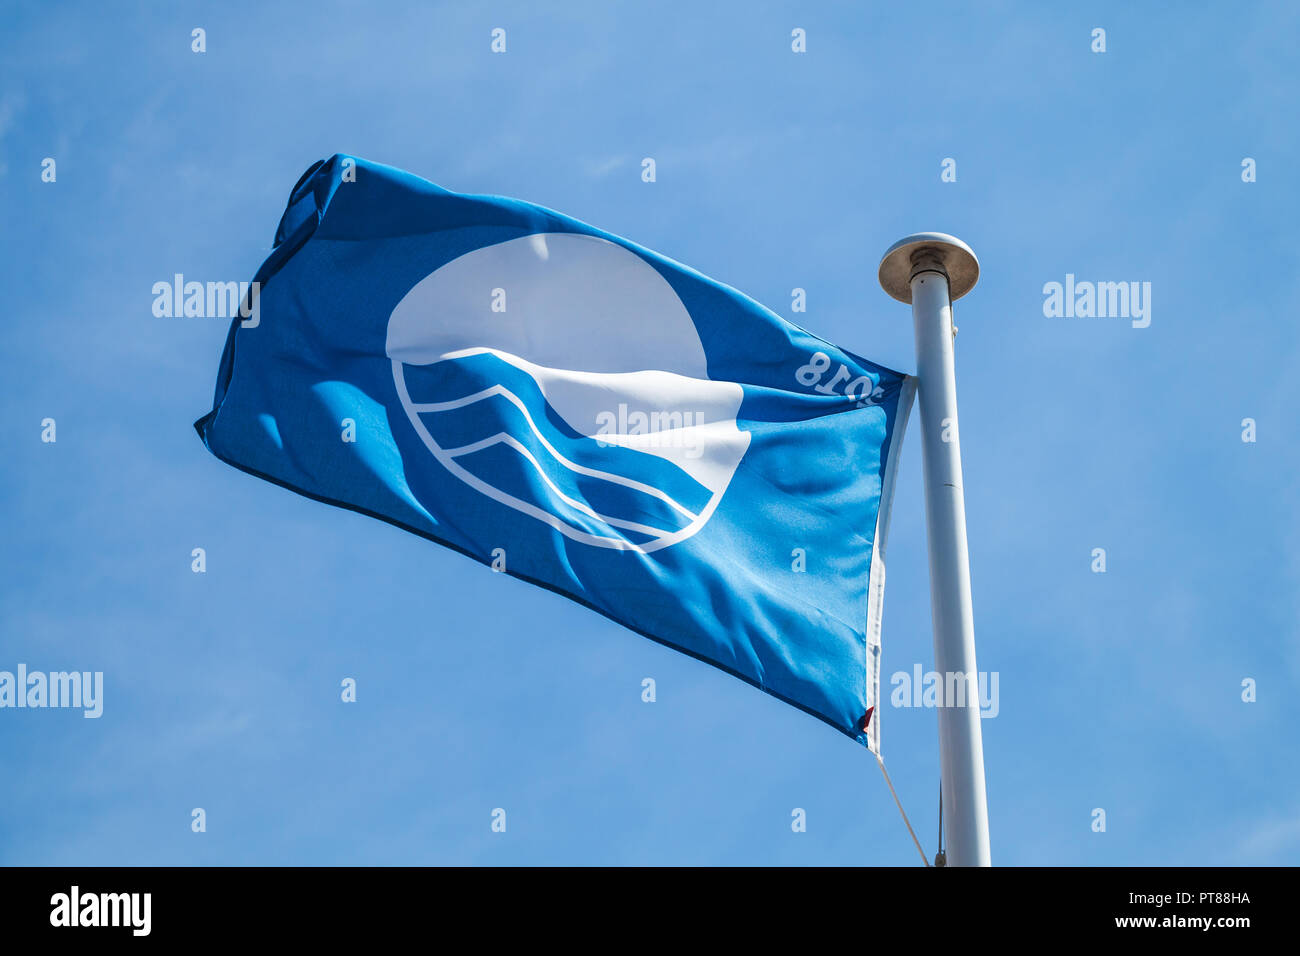 Spiaggia Bandiera Blu, sventola bandiera oltre il cielo nuvoloso Foto Stock